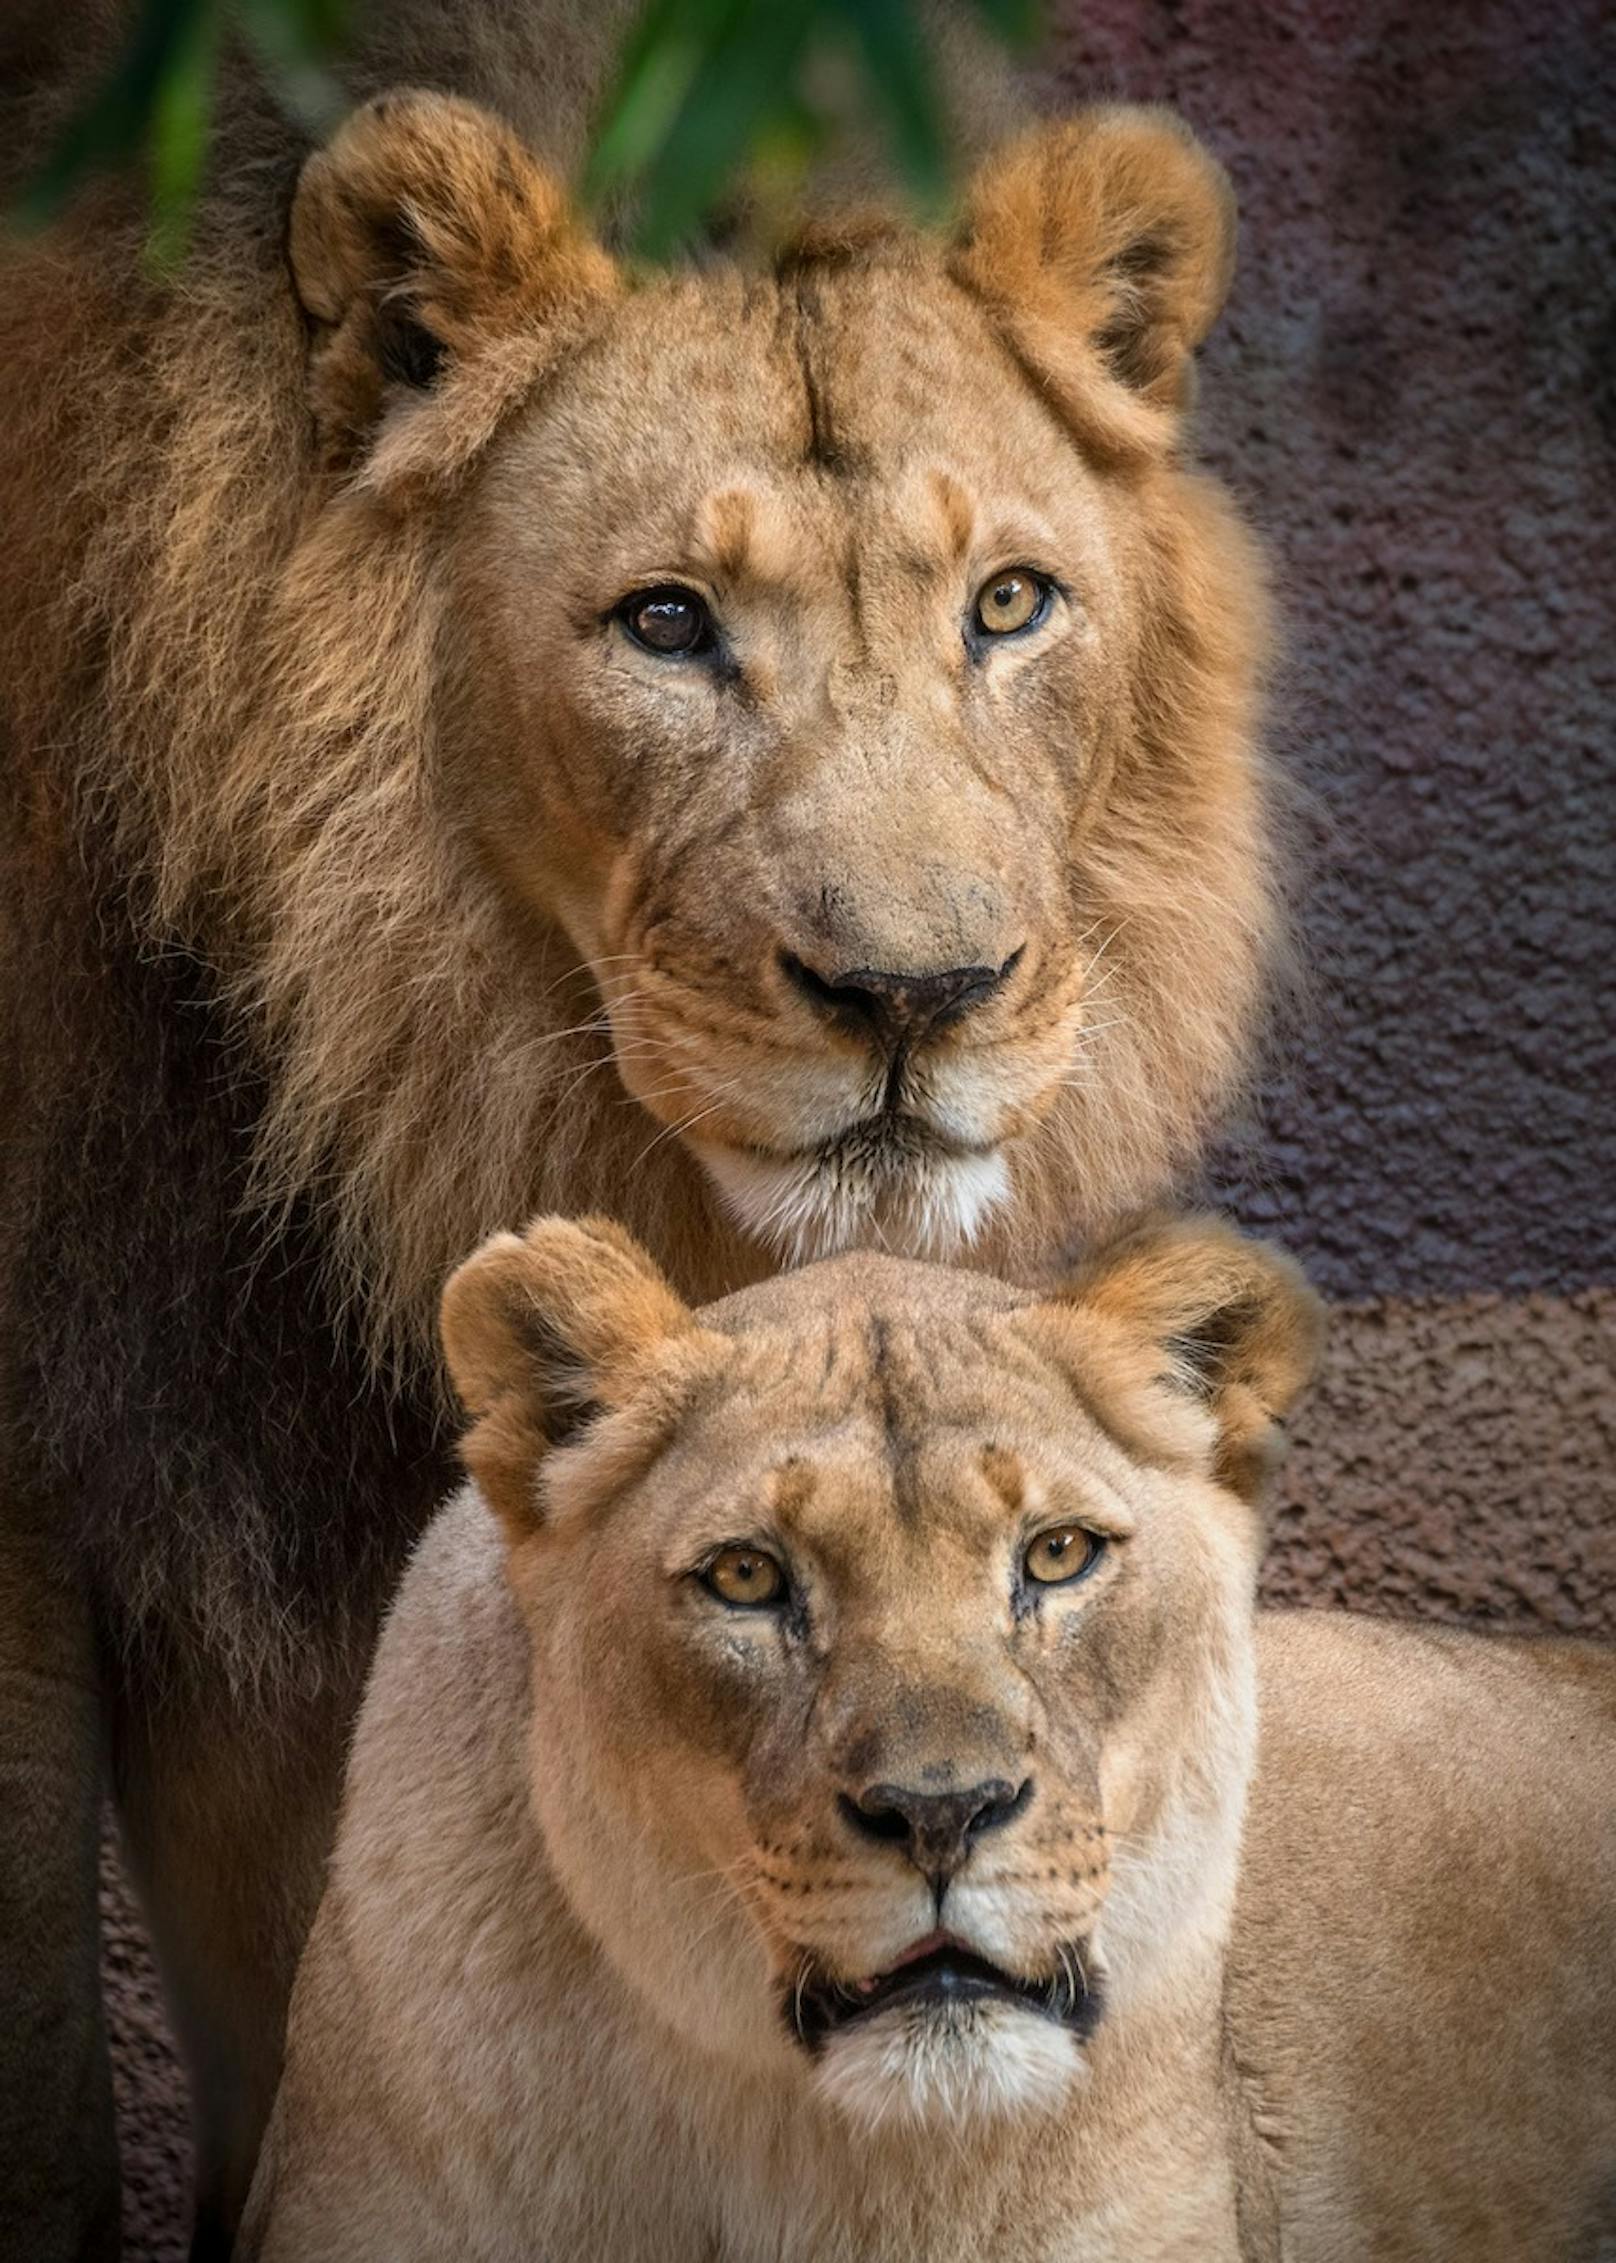 Hubert und Kalisa waren seit 2014 die Stars des Los Angeles Zoos